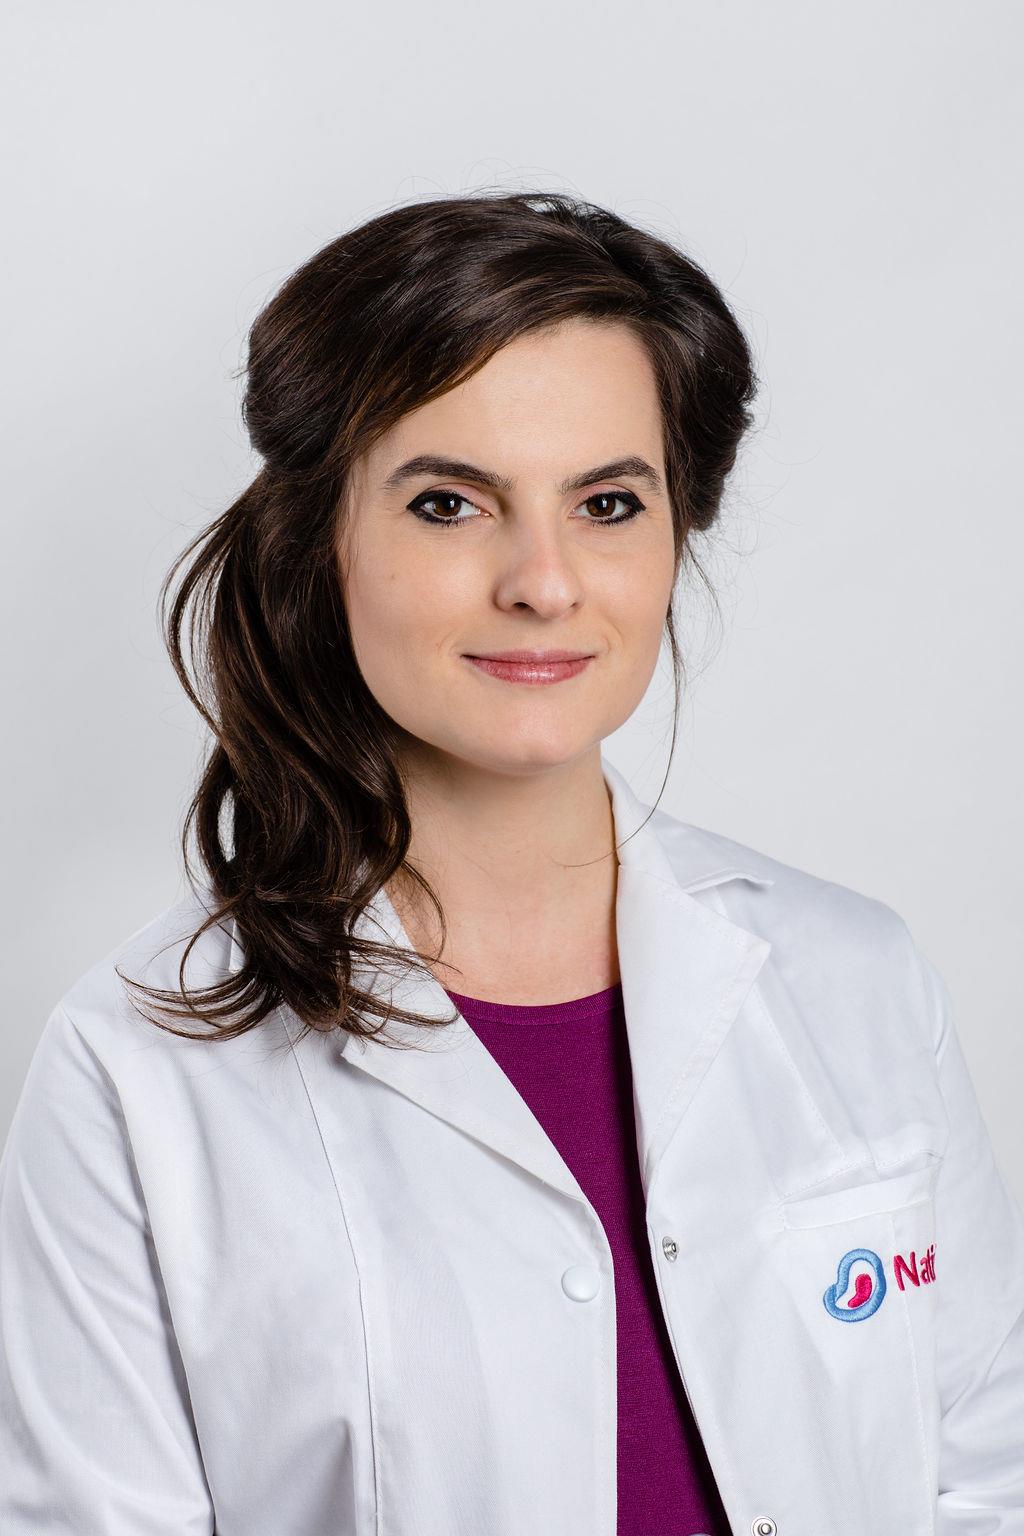 Dr. Corina Gica